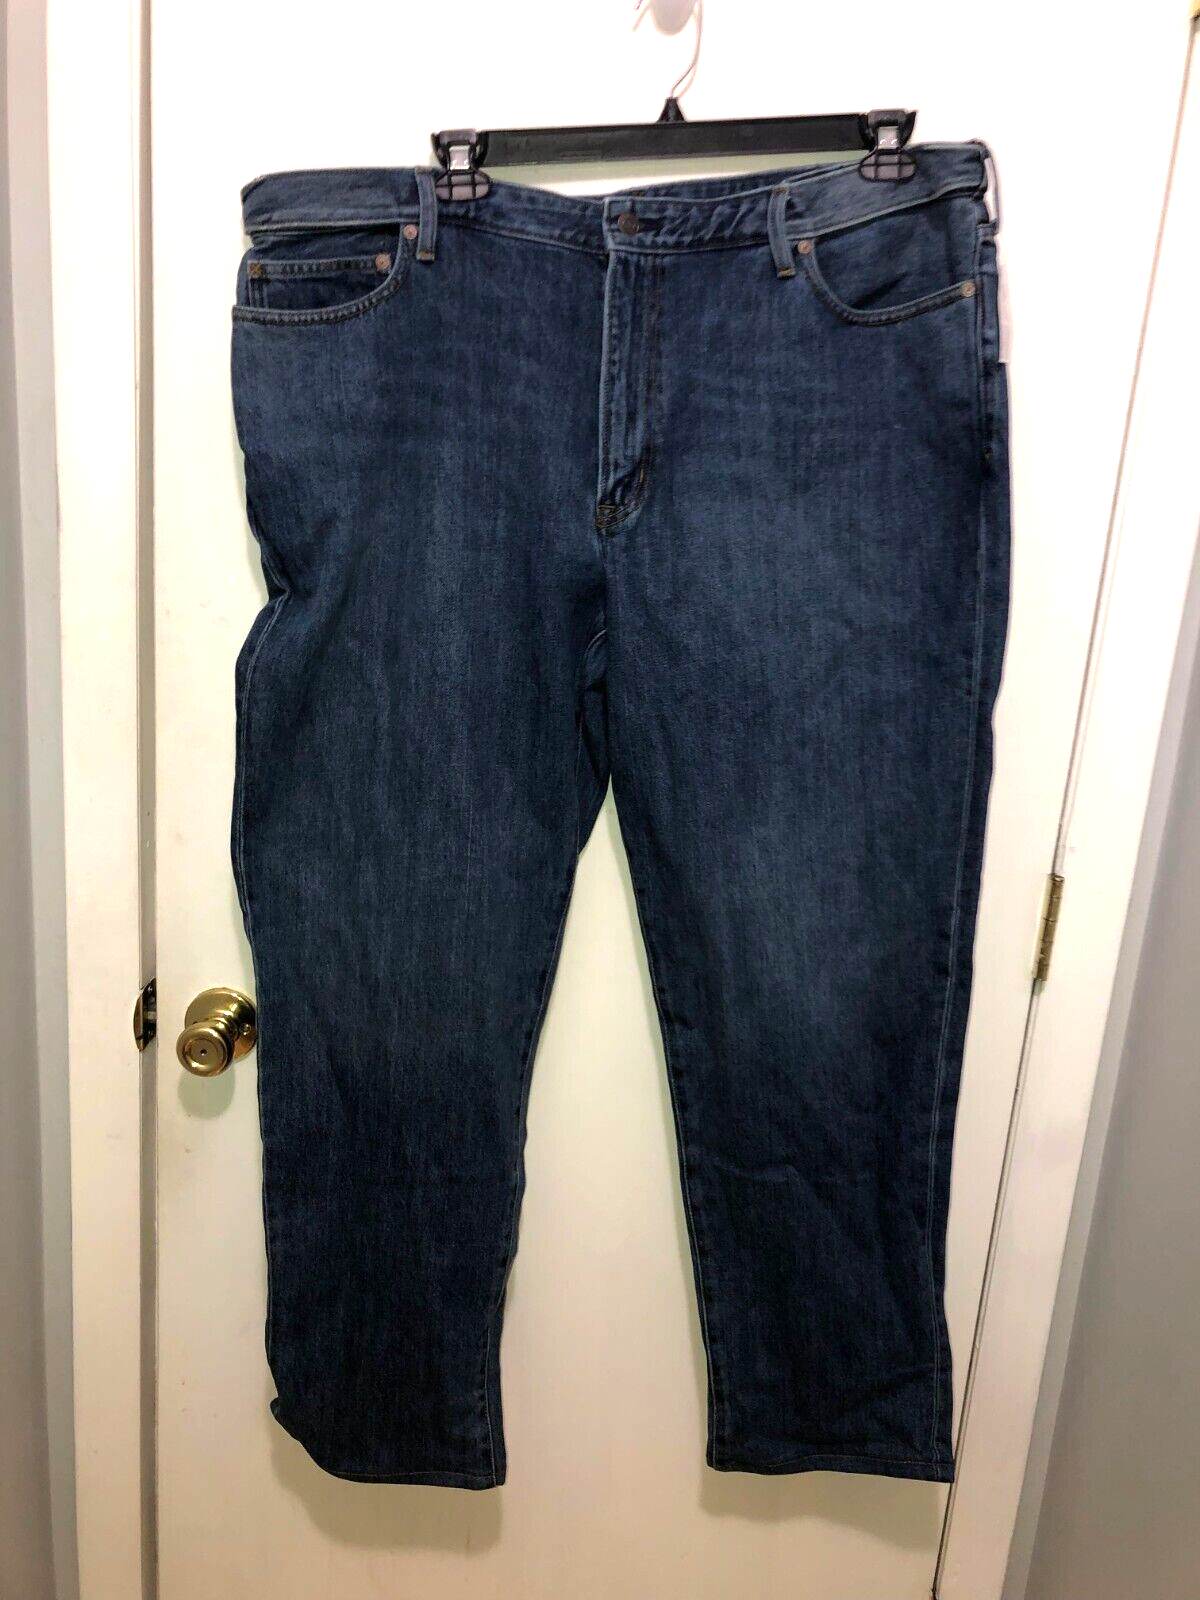 Lands End Square Rigger Blue Jeans Mens Size 44X32 Expandable Flex Waist - $18.80